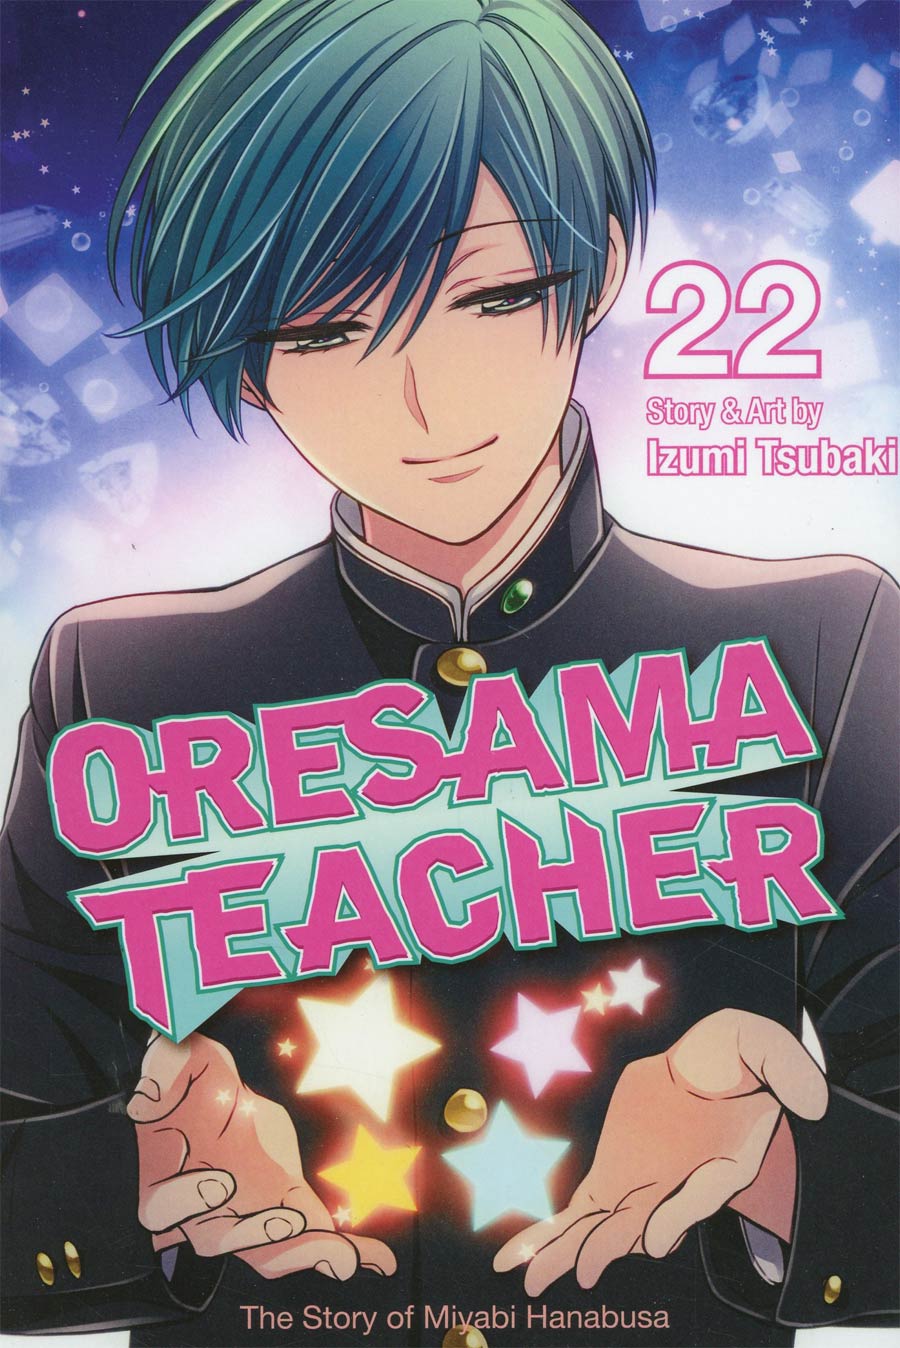 Oresama Teacher Vol 22 GN